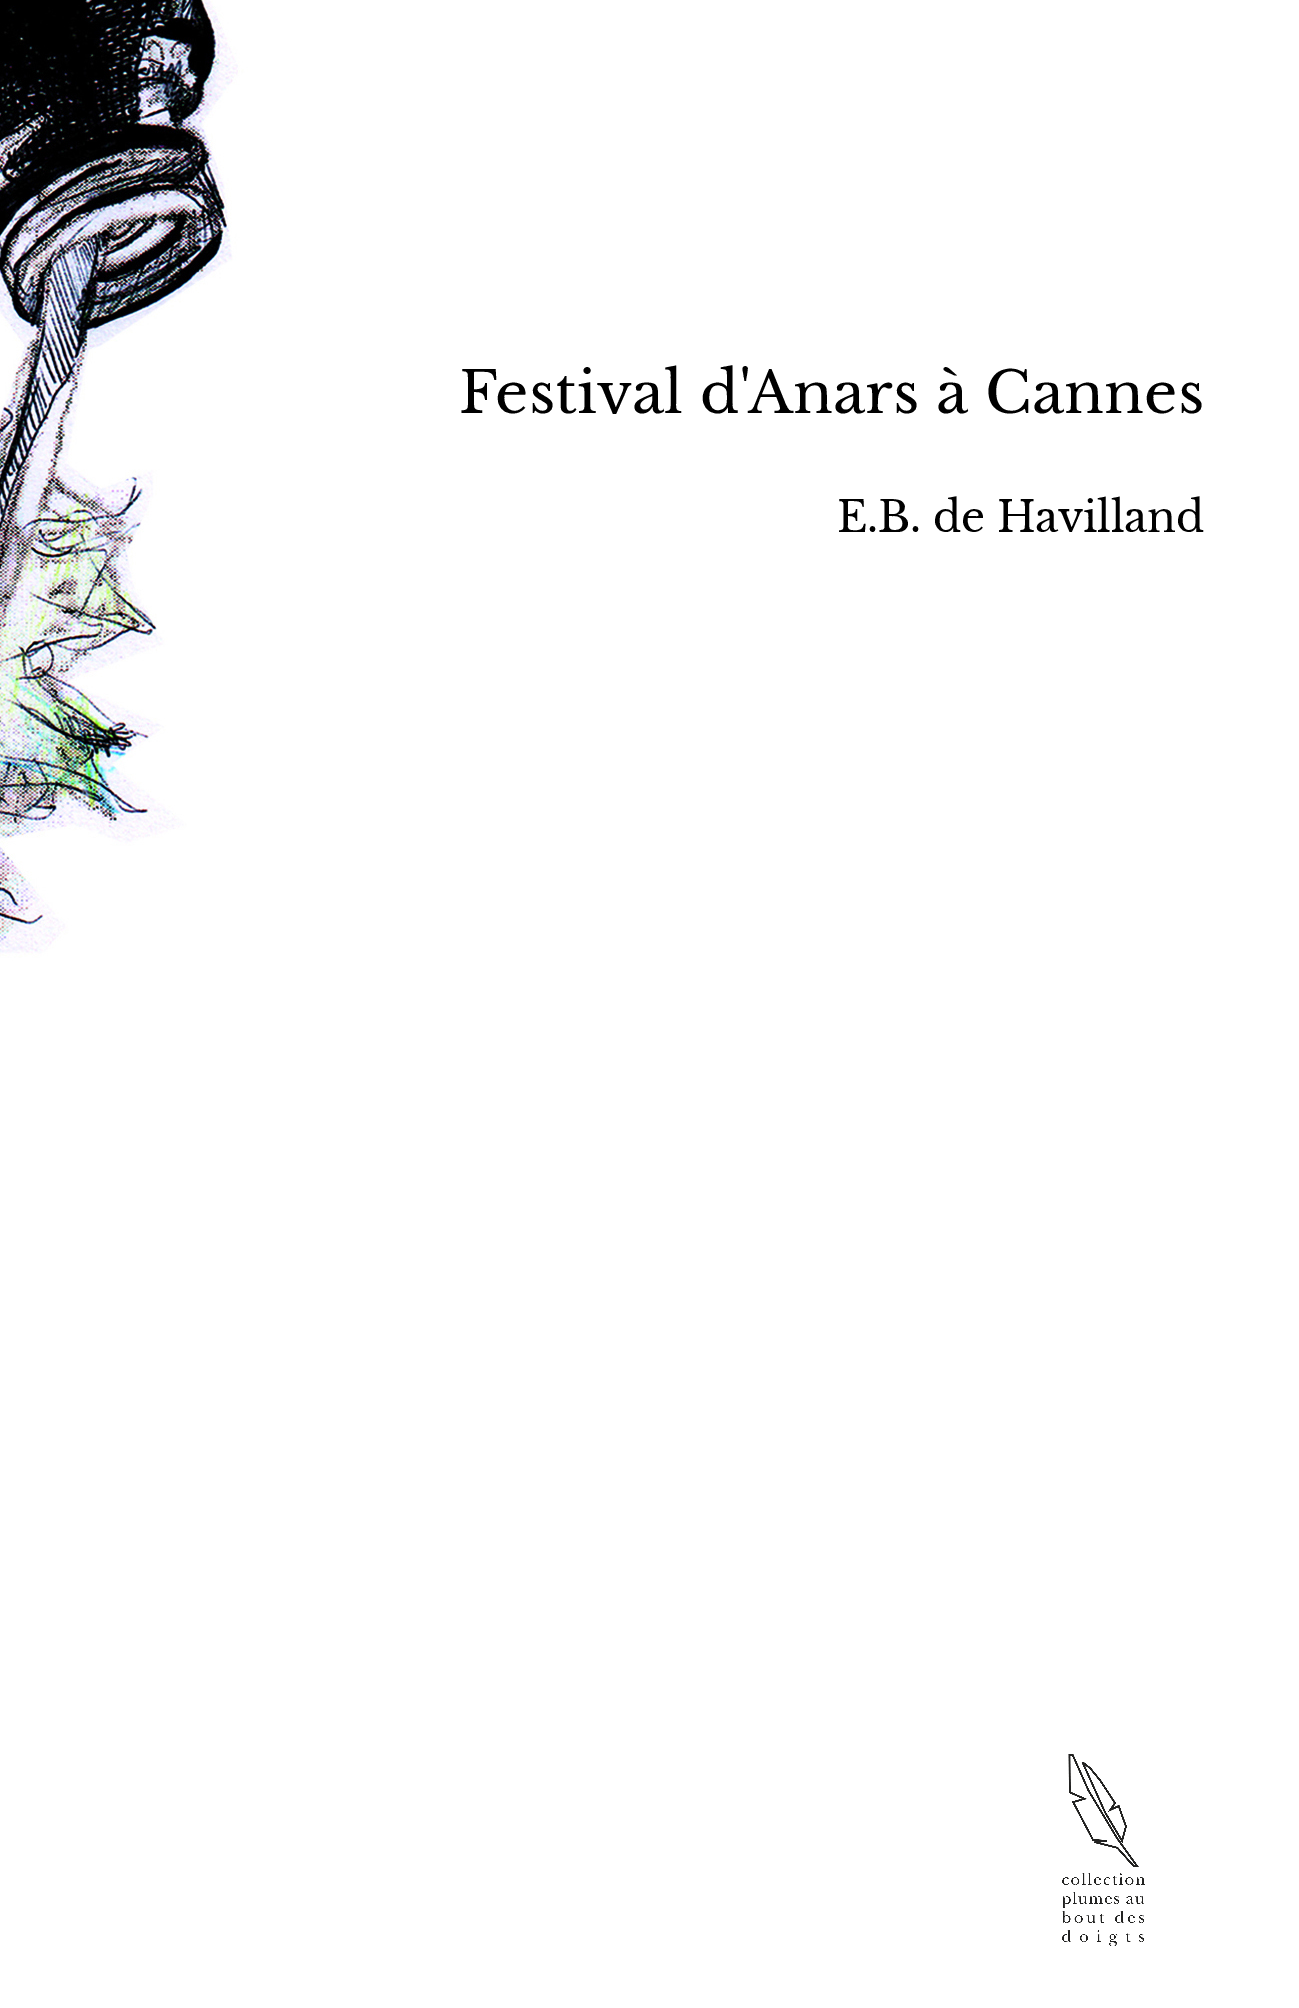 Festival d'Anars à Cannes